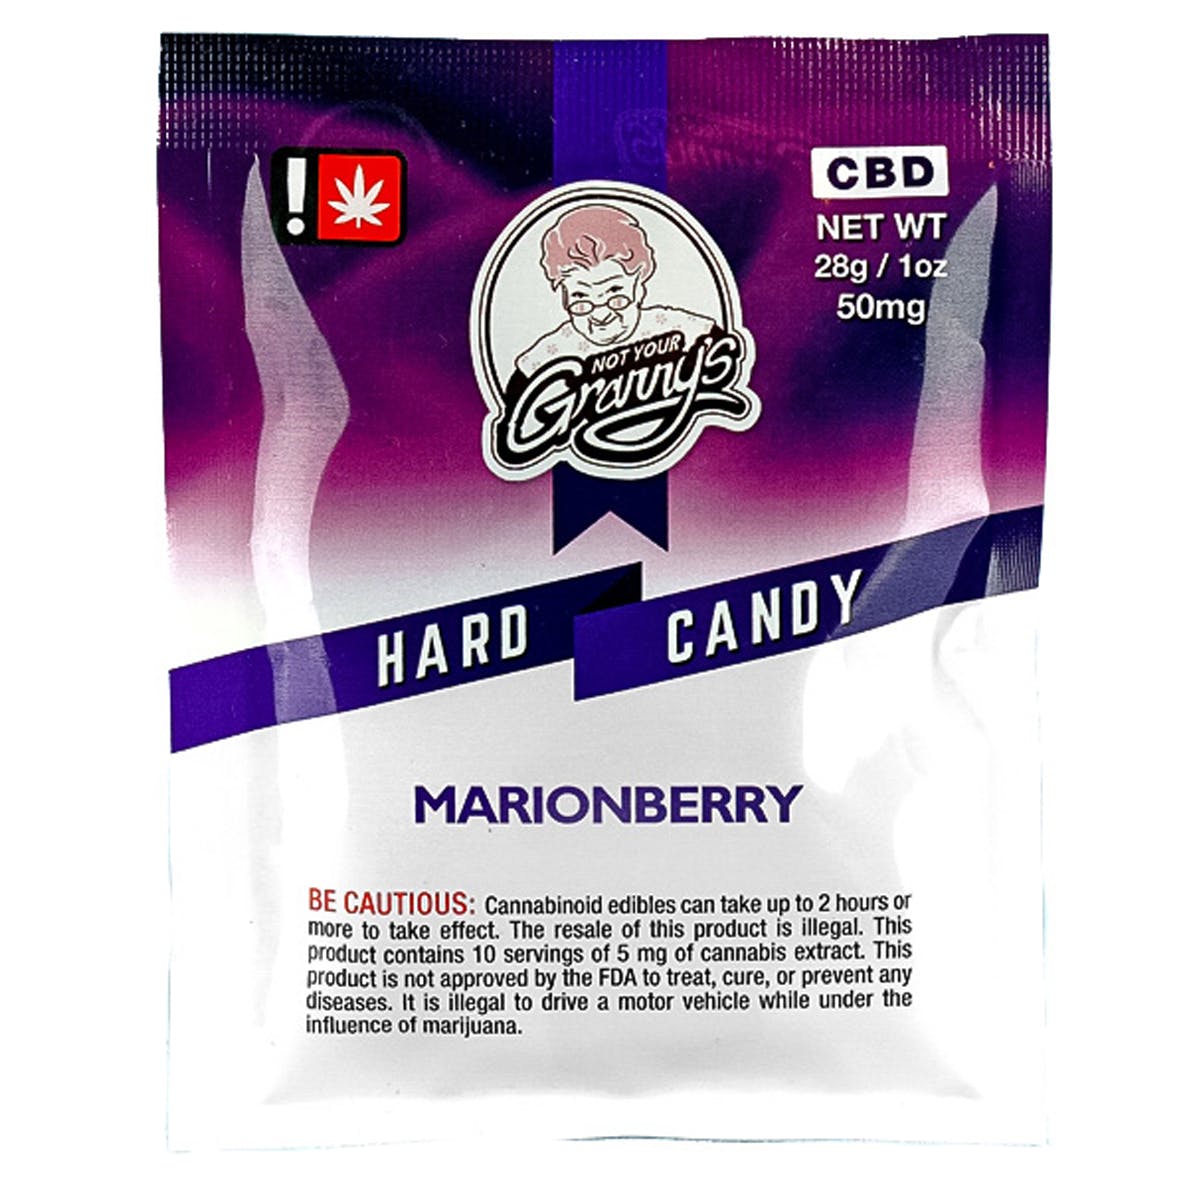 marijuana-dispensaries-8265-se-mcloughlin-blvd-portland-hard-candy-marionberry-cbd-50mg